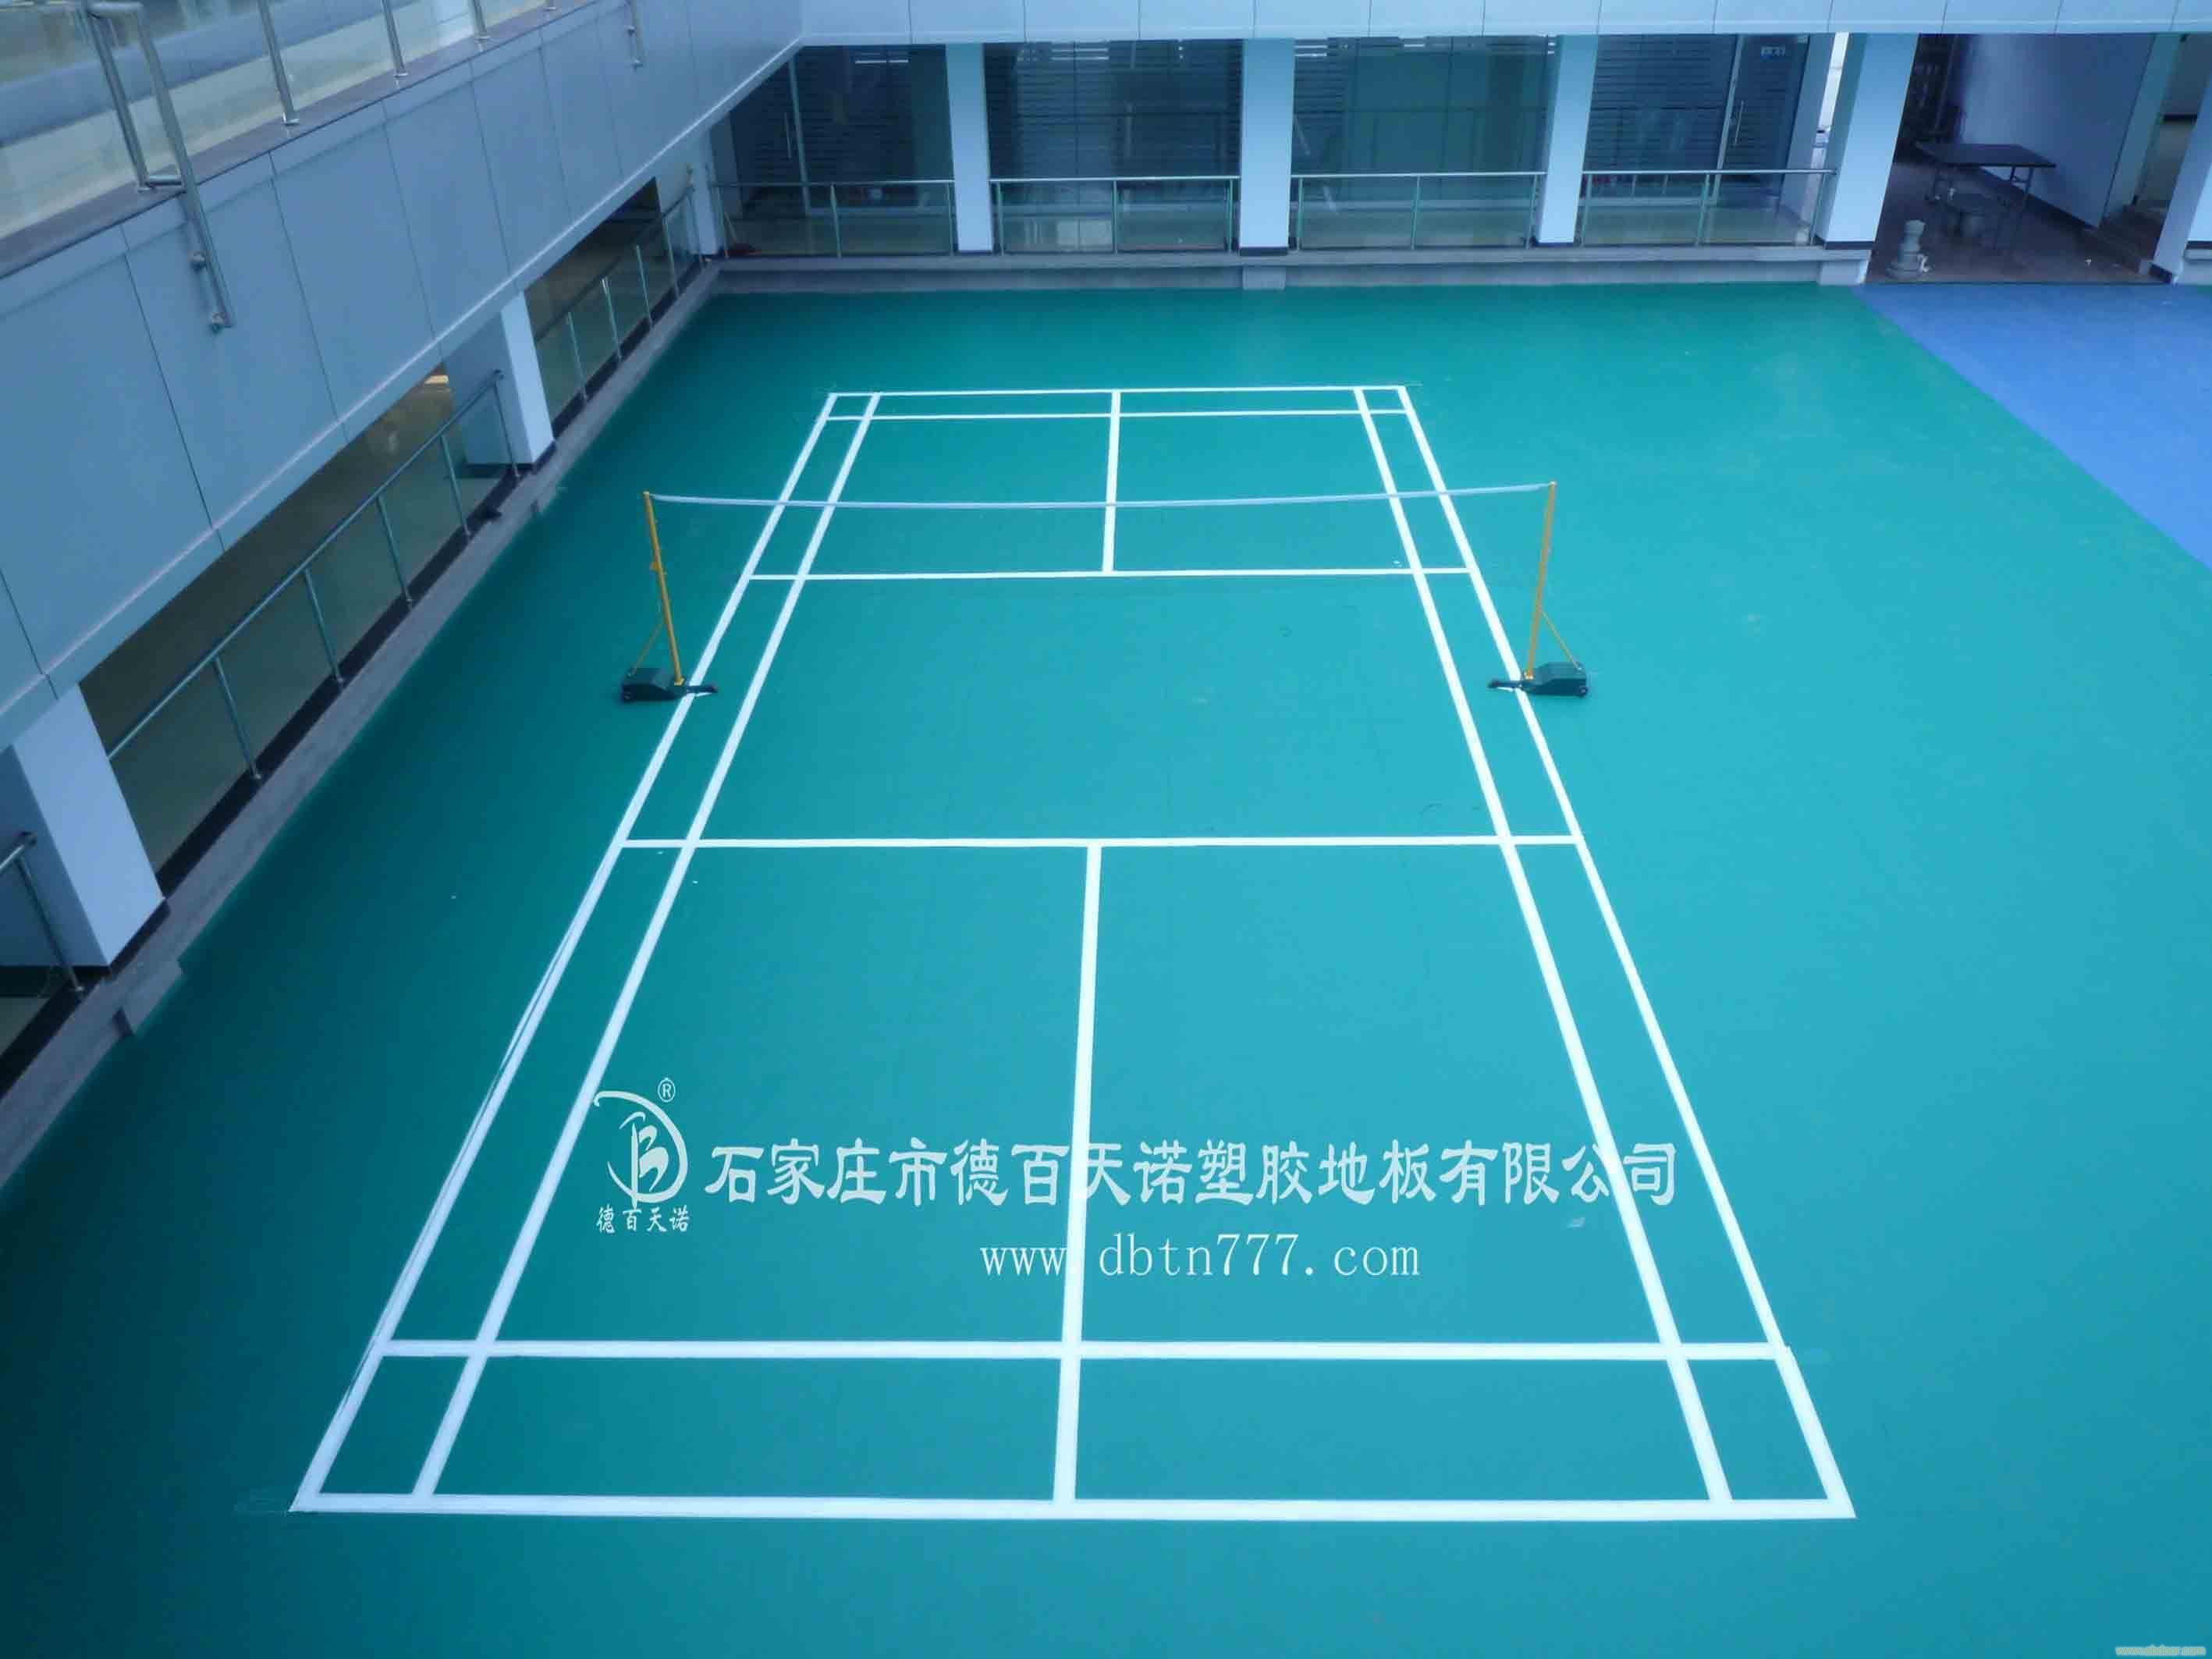 羽毛球pvc塑胶地板价格/德百天诺pvc塑胶运动地板9羽毛球标准比赛场地